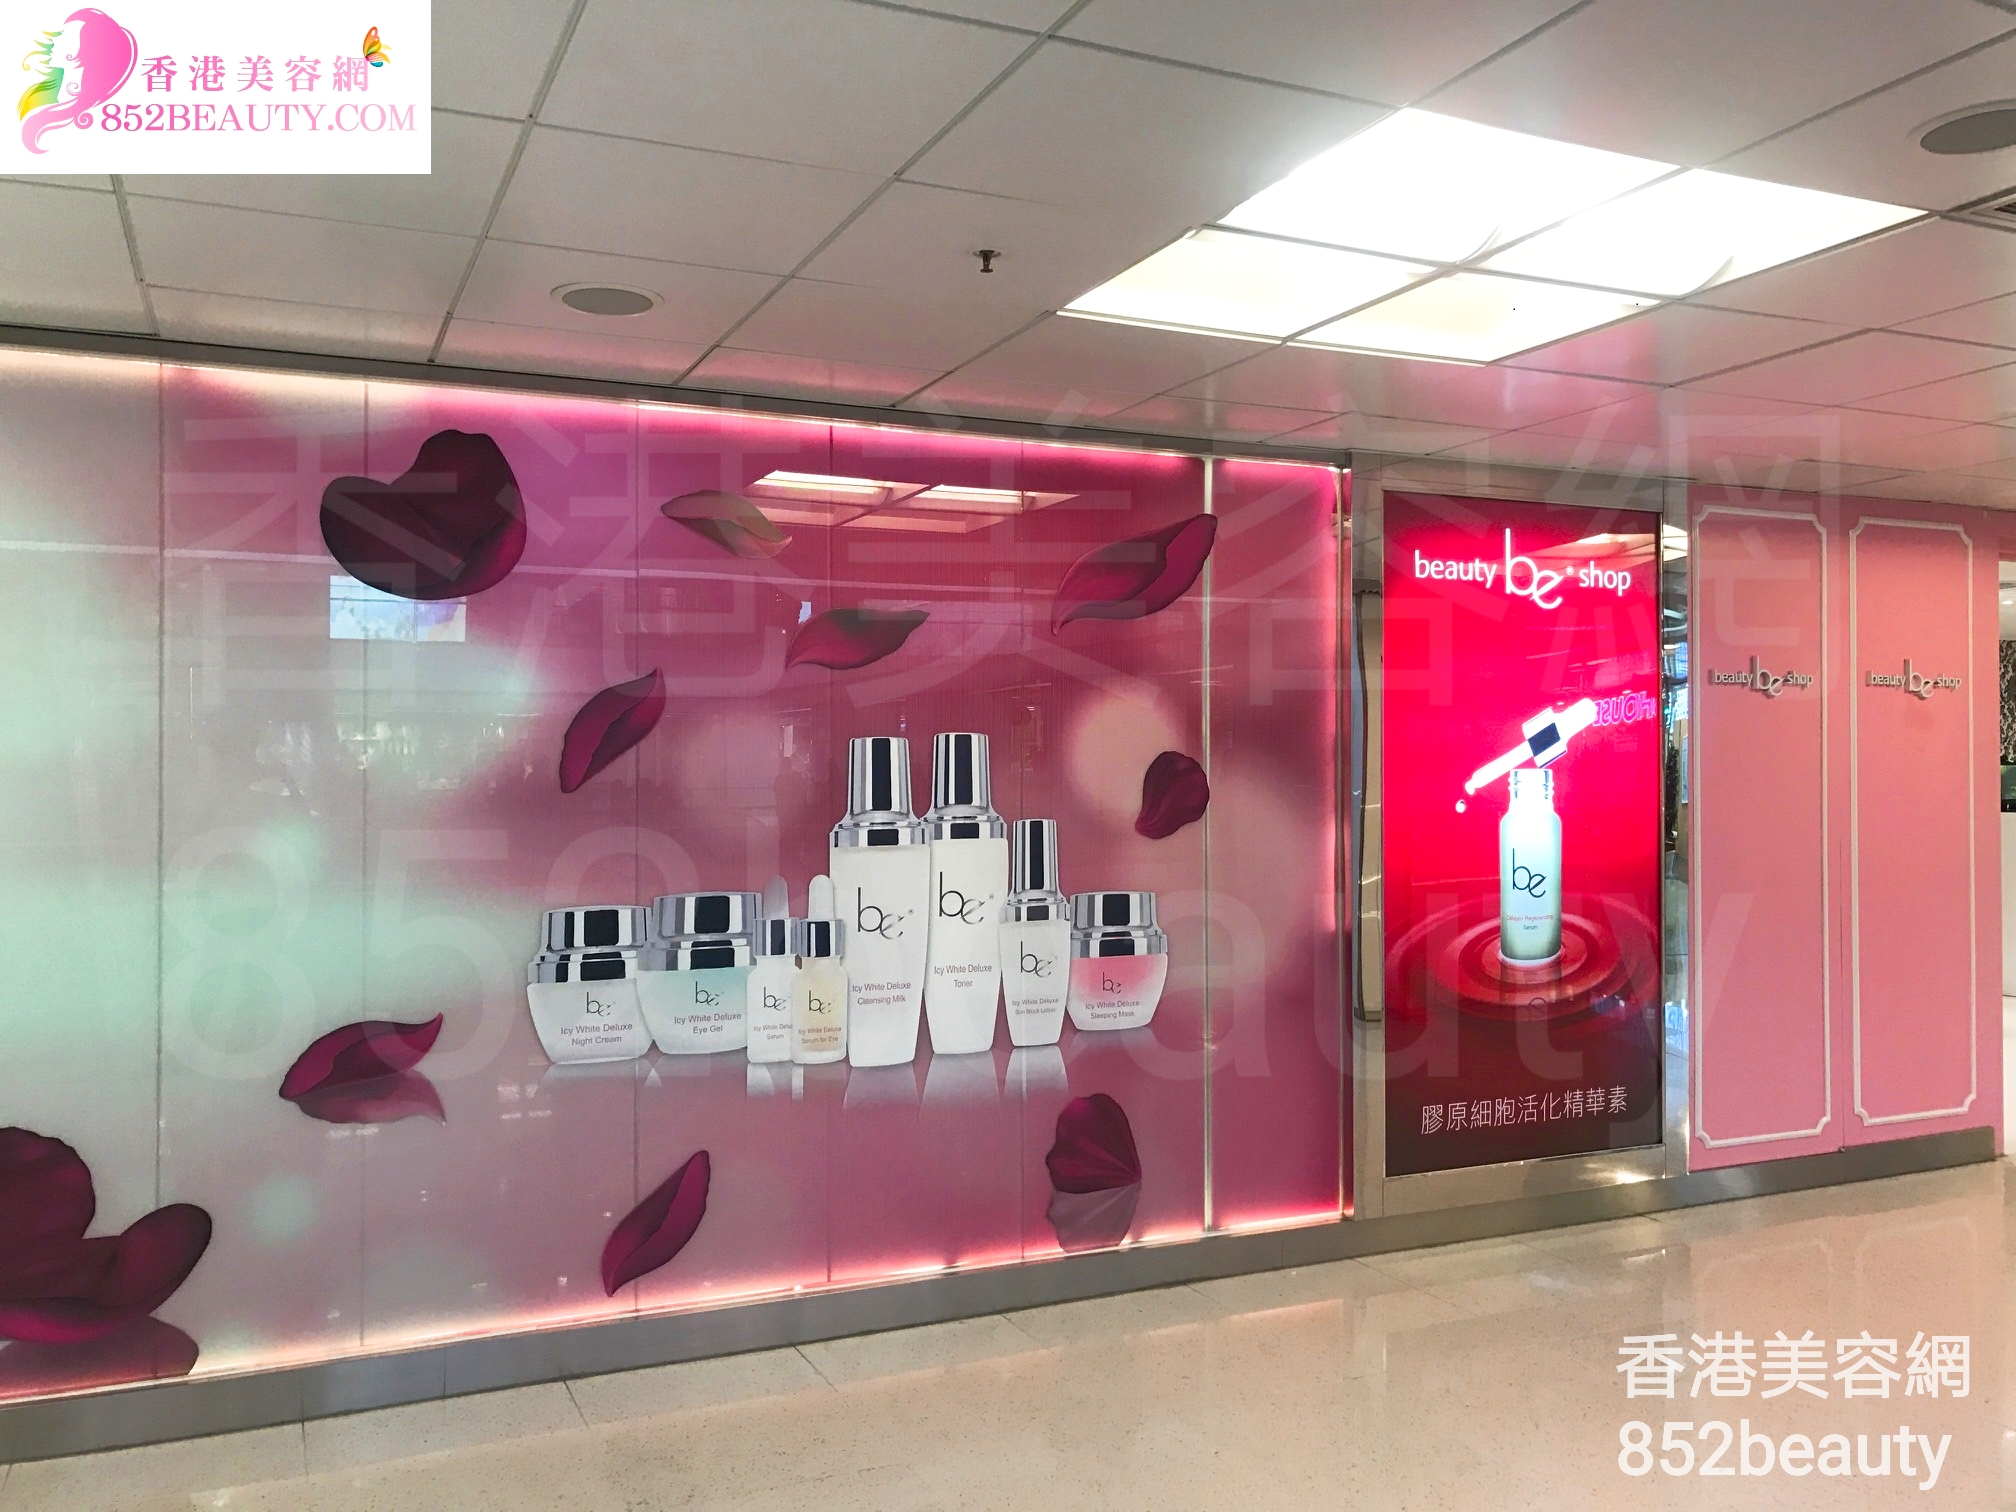 手脚护理: be beauty shop (葵涌廣場)